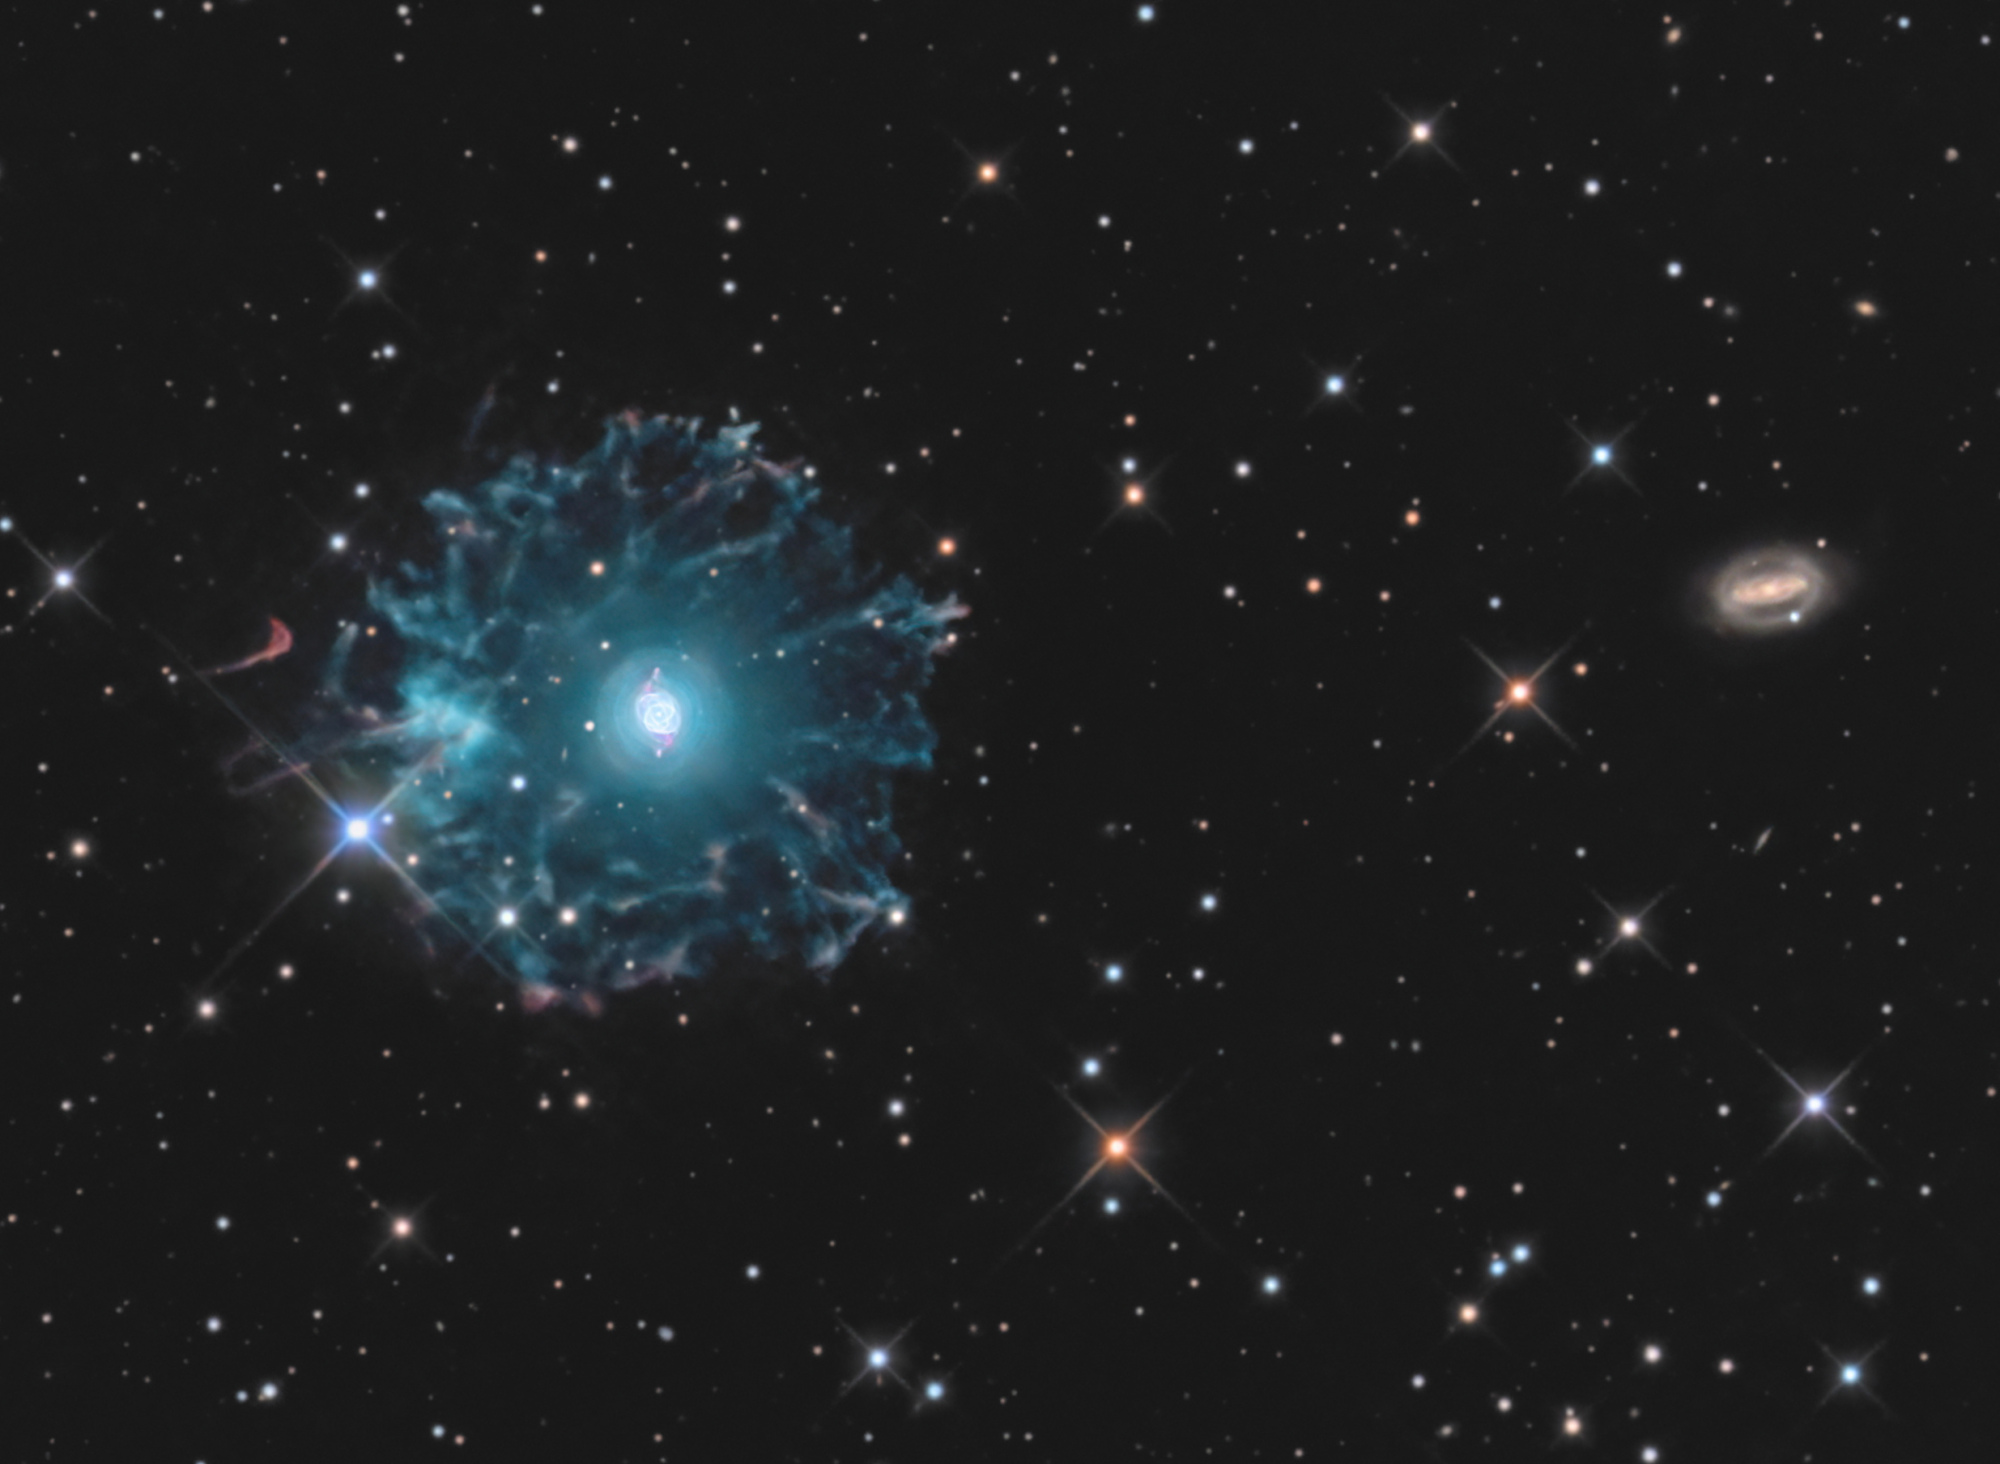 NGC-6543-LRVB-Final-crop.thumb.jpg.f8ec0558f804558946f3be524ac7394e.jpg